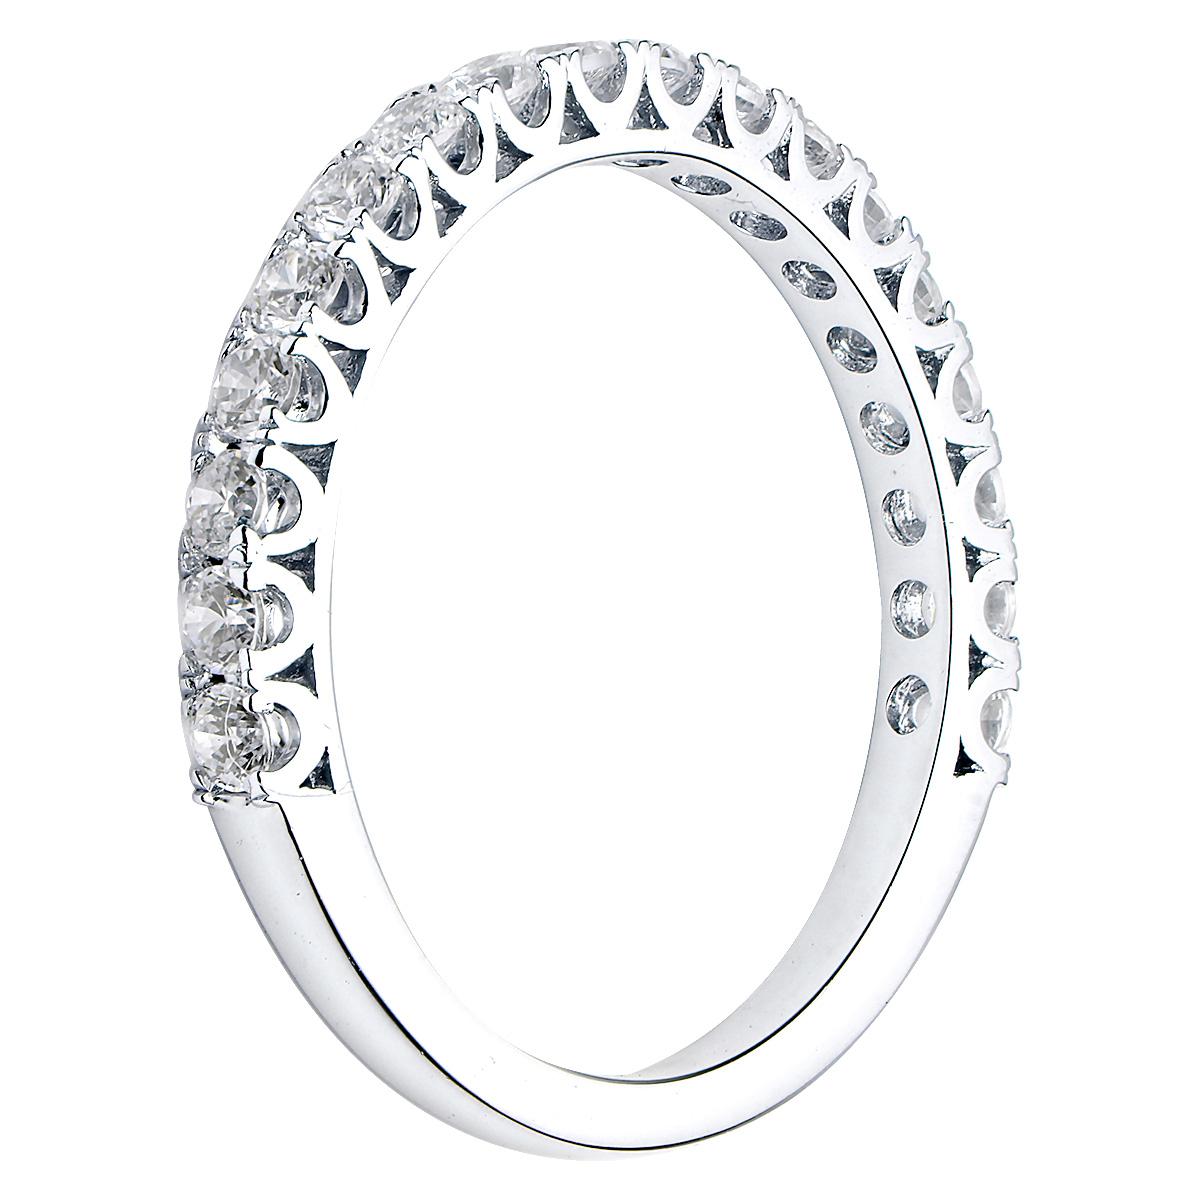 Dieses schöne klassische Diamantband hat etwa 2/3 der Länge des Bandes Diamanten, die mit schönen Zacken befestigt sind. Es gibt 18 runde VS2, G-Farbendiamanten von insgesamt 0,52 Karat, die in 1,8 Gramm 18 Karat Weißgold gefasst sind. Dieser Ring